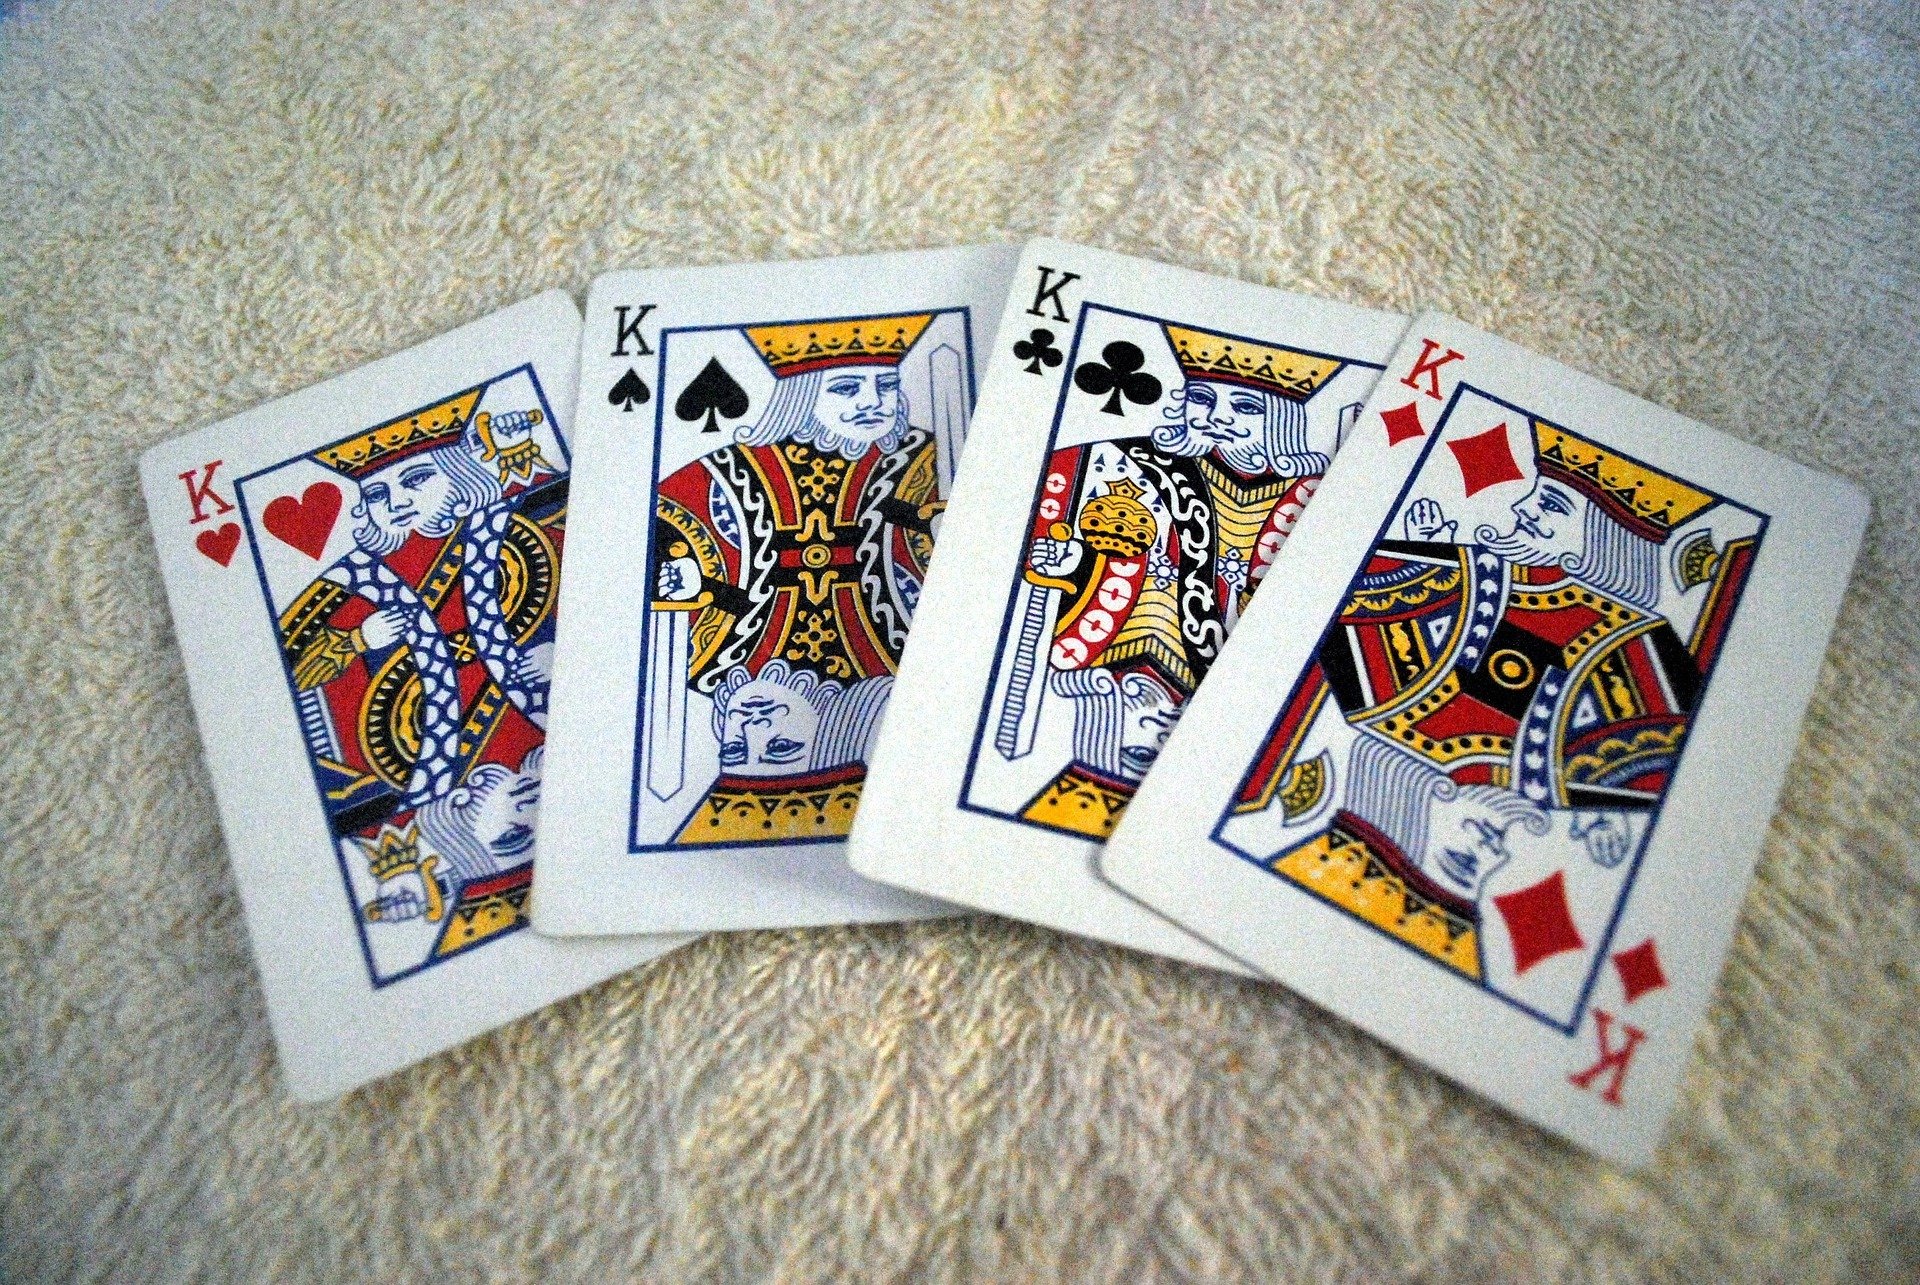 Você sabia que os reis das cartas de baralho representam um monarca importante da história da humanidade? Conheça quem são esses líderes.